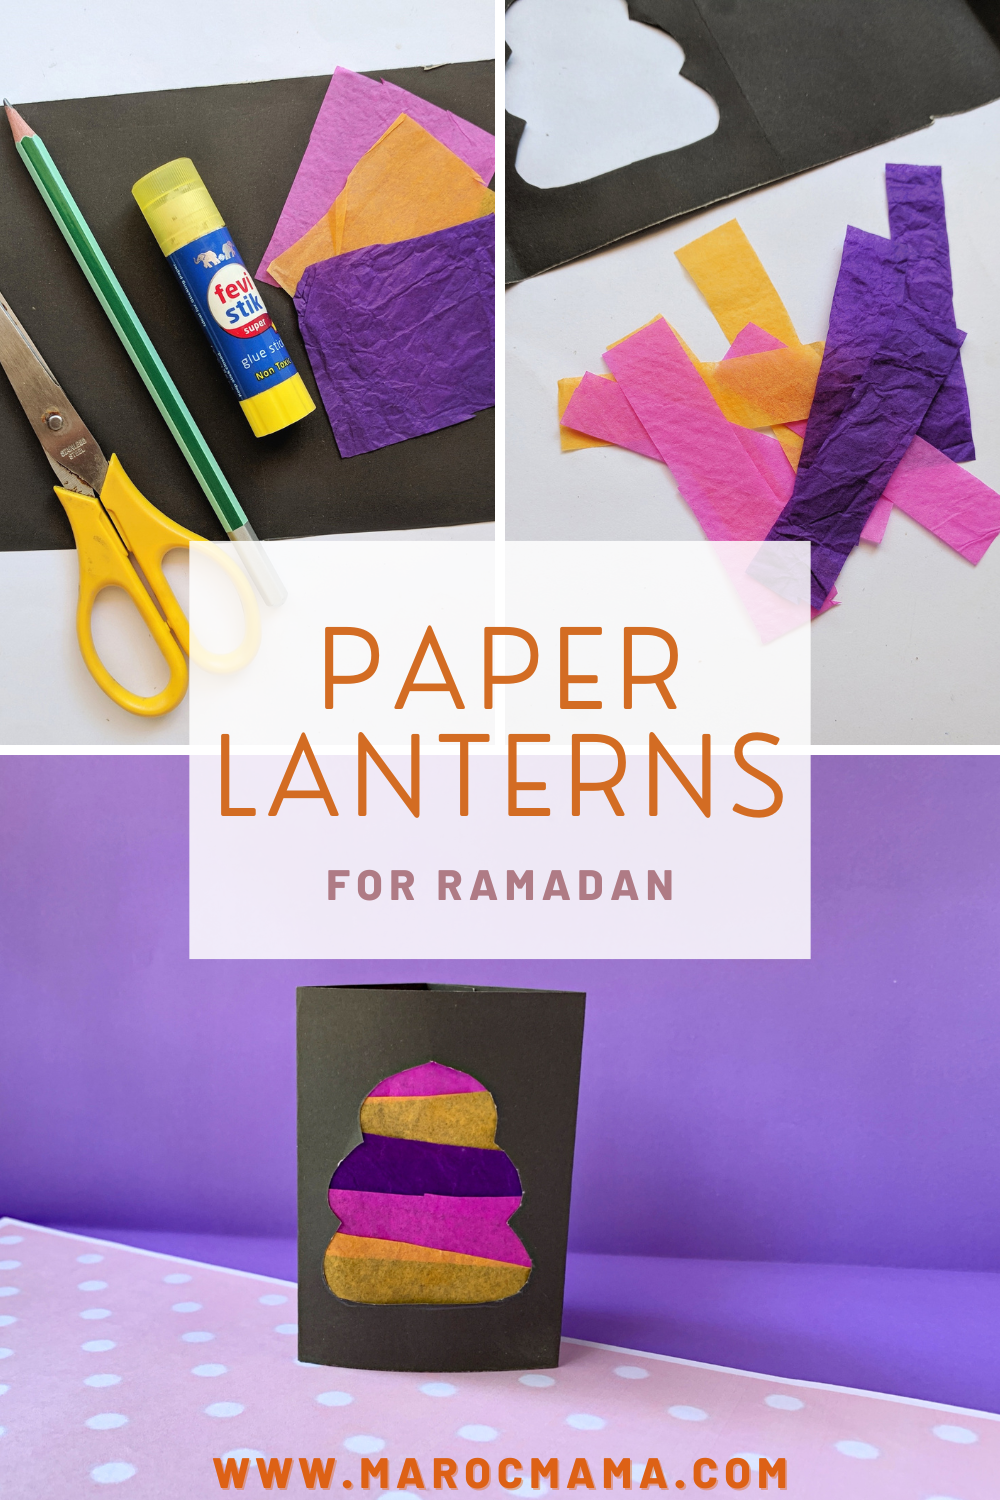 materialen en eindproduct van papieren lantaarns voor Ramadan